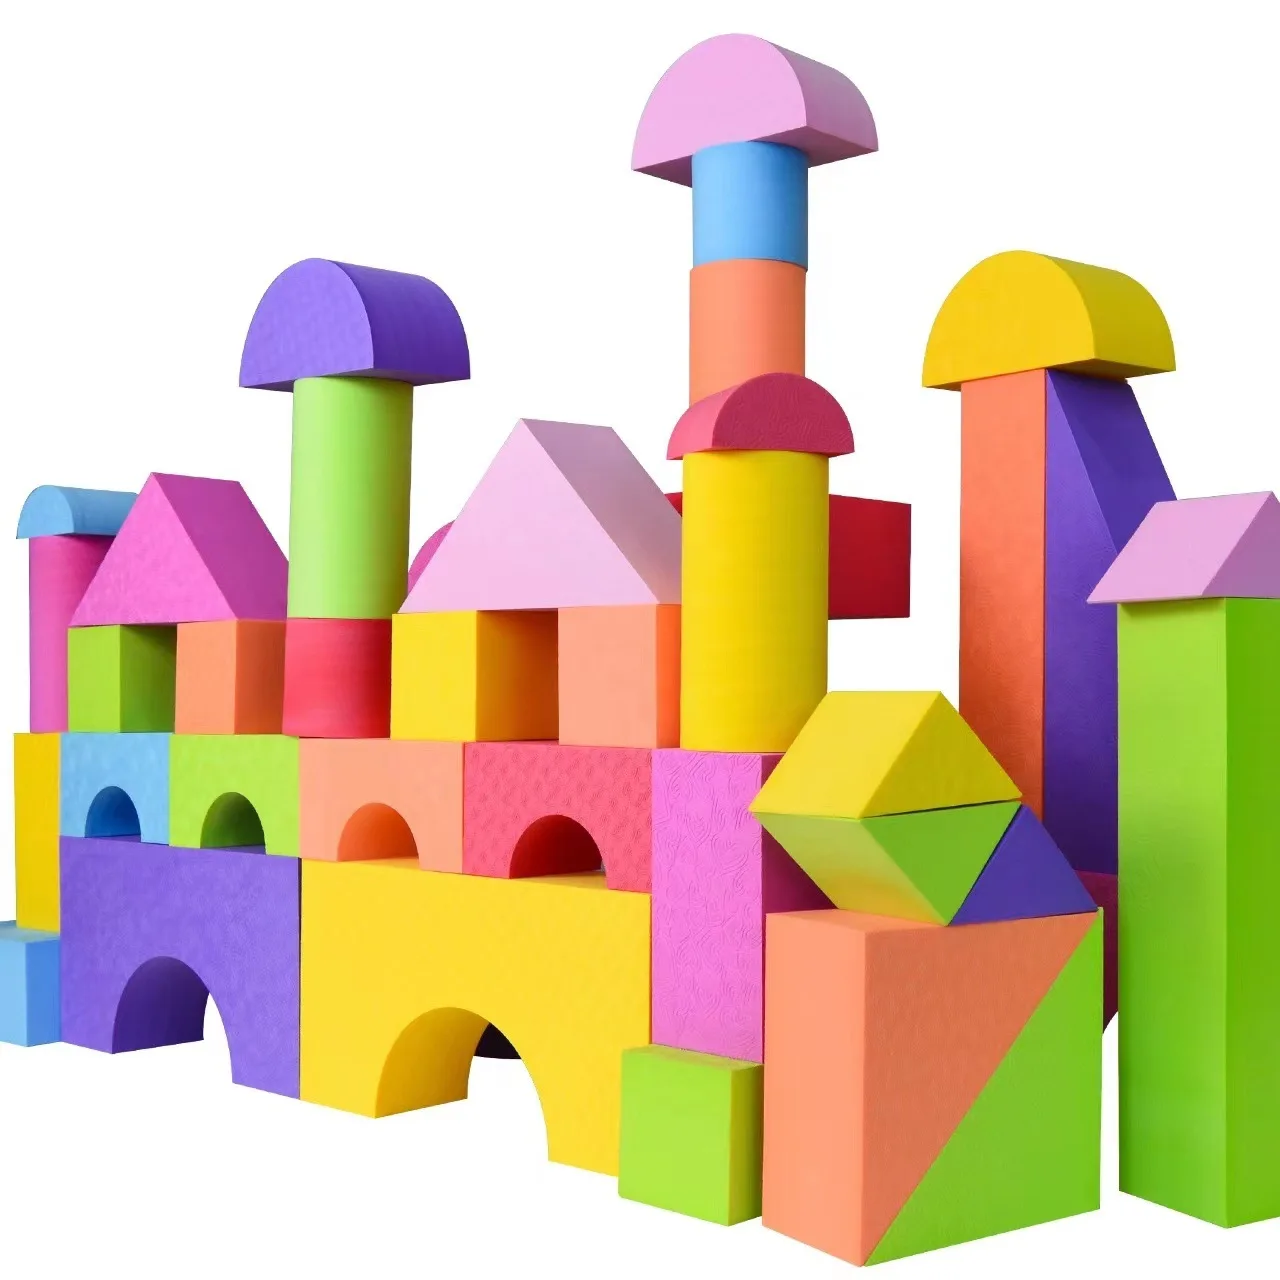 50 шт./компл. Строительные блоки большого размера, большие пеноблоки, красочные строительные игрушки, обучающие игрушки для детей, подарки для детей